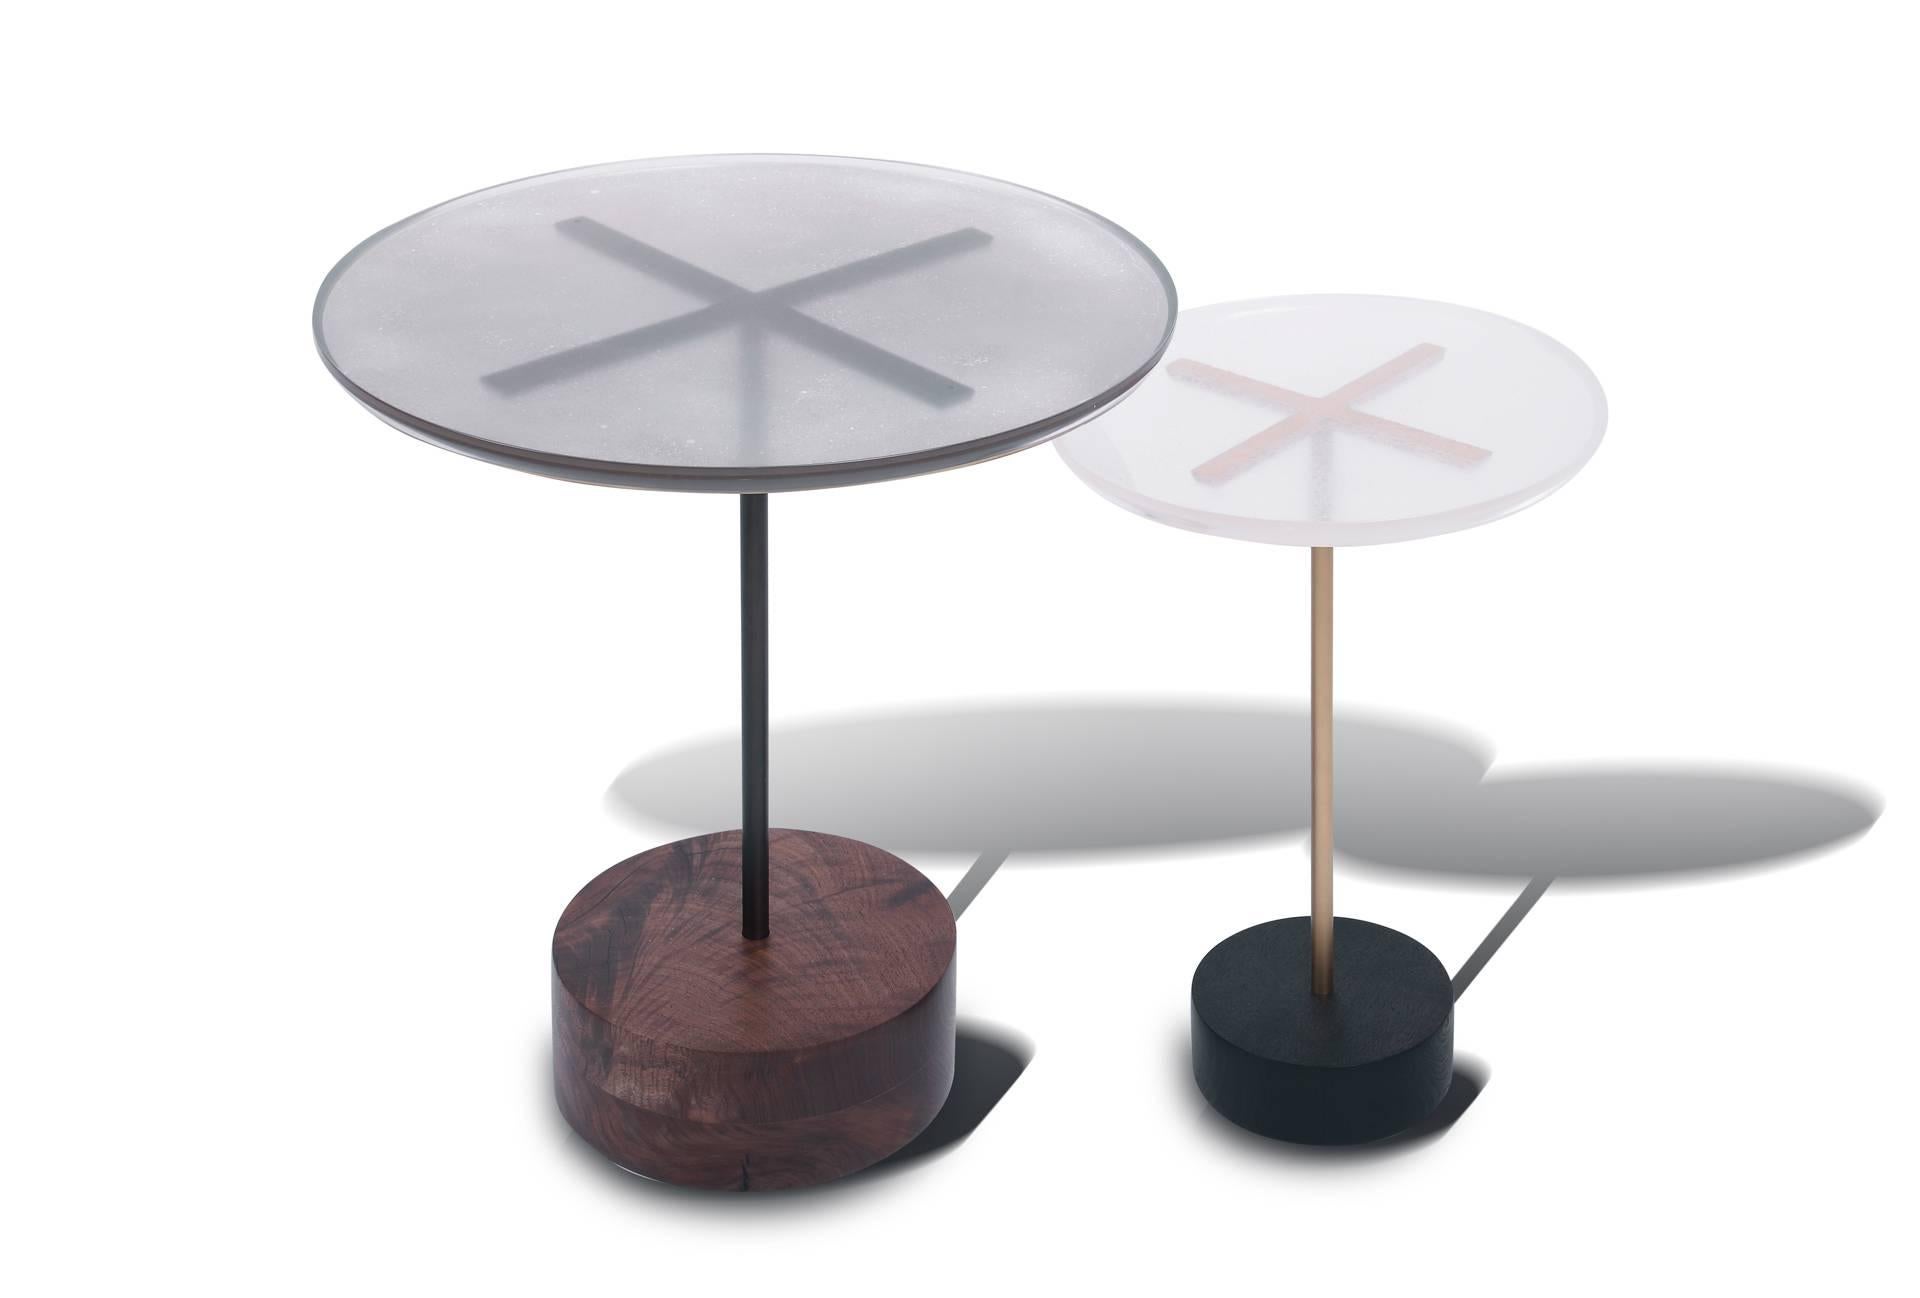 Les tables d'extrémité Stella, d'un chic sans effort, sont dotées d'un plateau en Lucite, poudre métallique et résine époxy et d'une base en bronze et noyer. À la fois ludiques et sophistiquées, ces tables méticuleusement conçues s'adaptent à tous